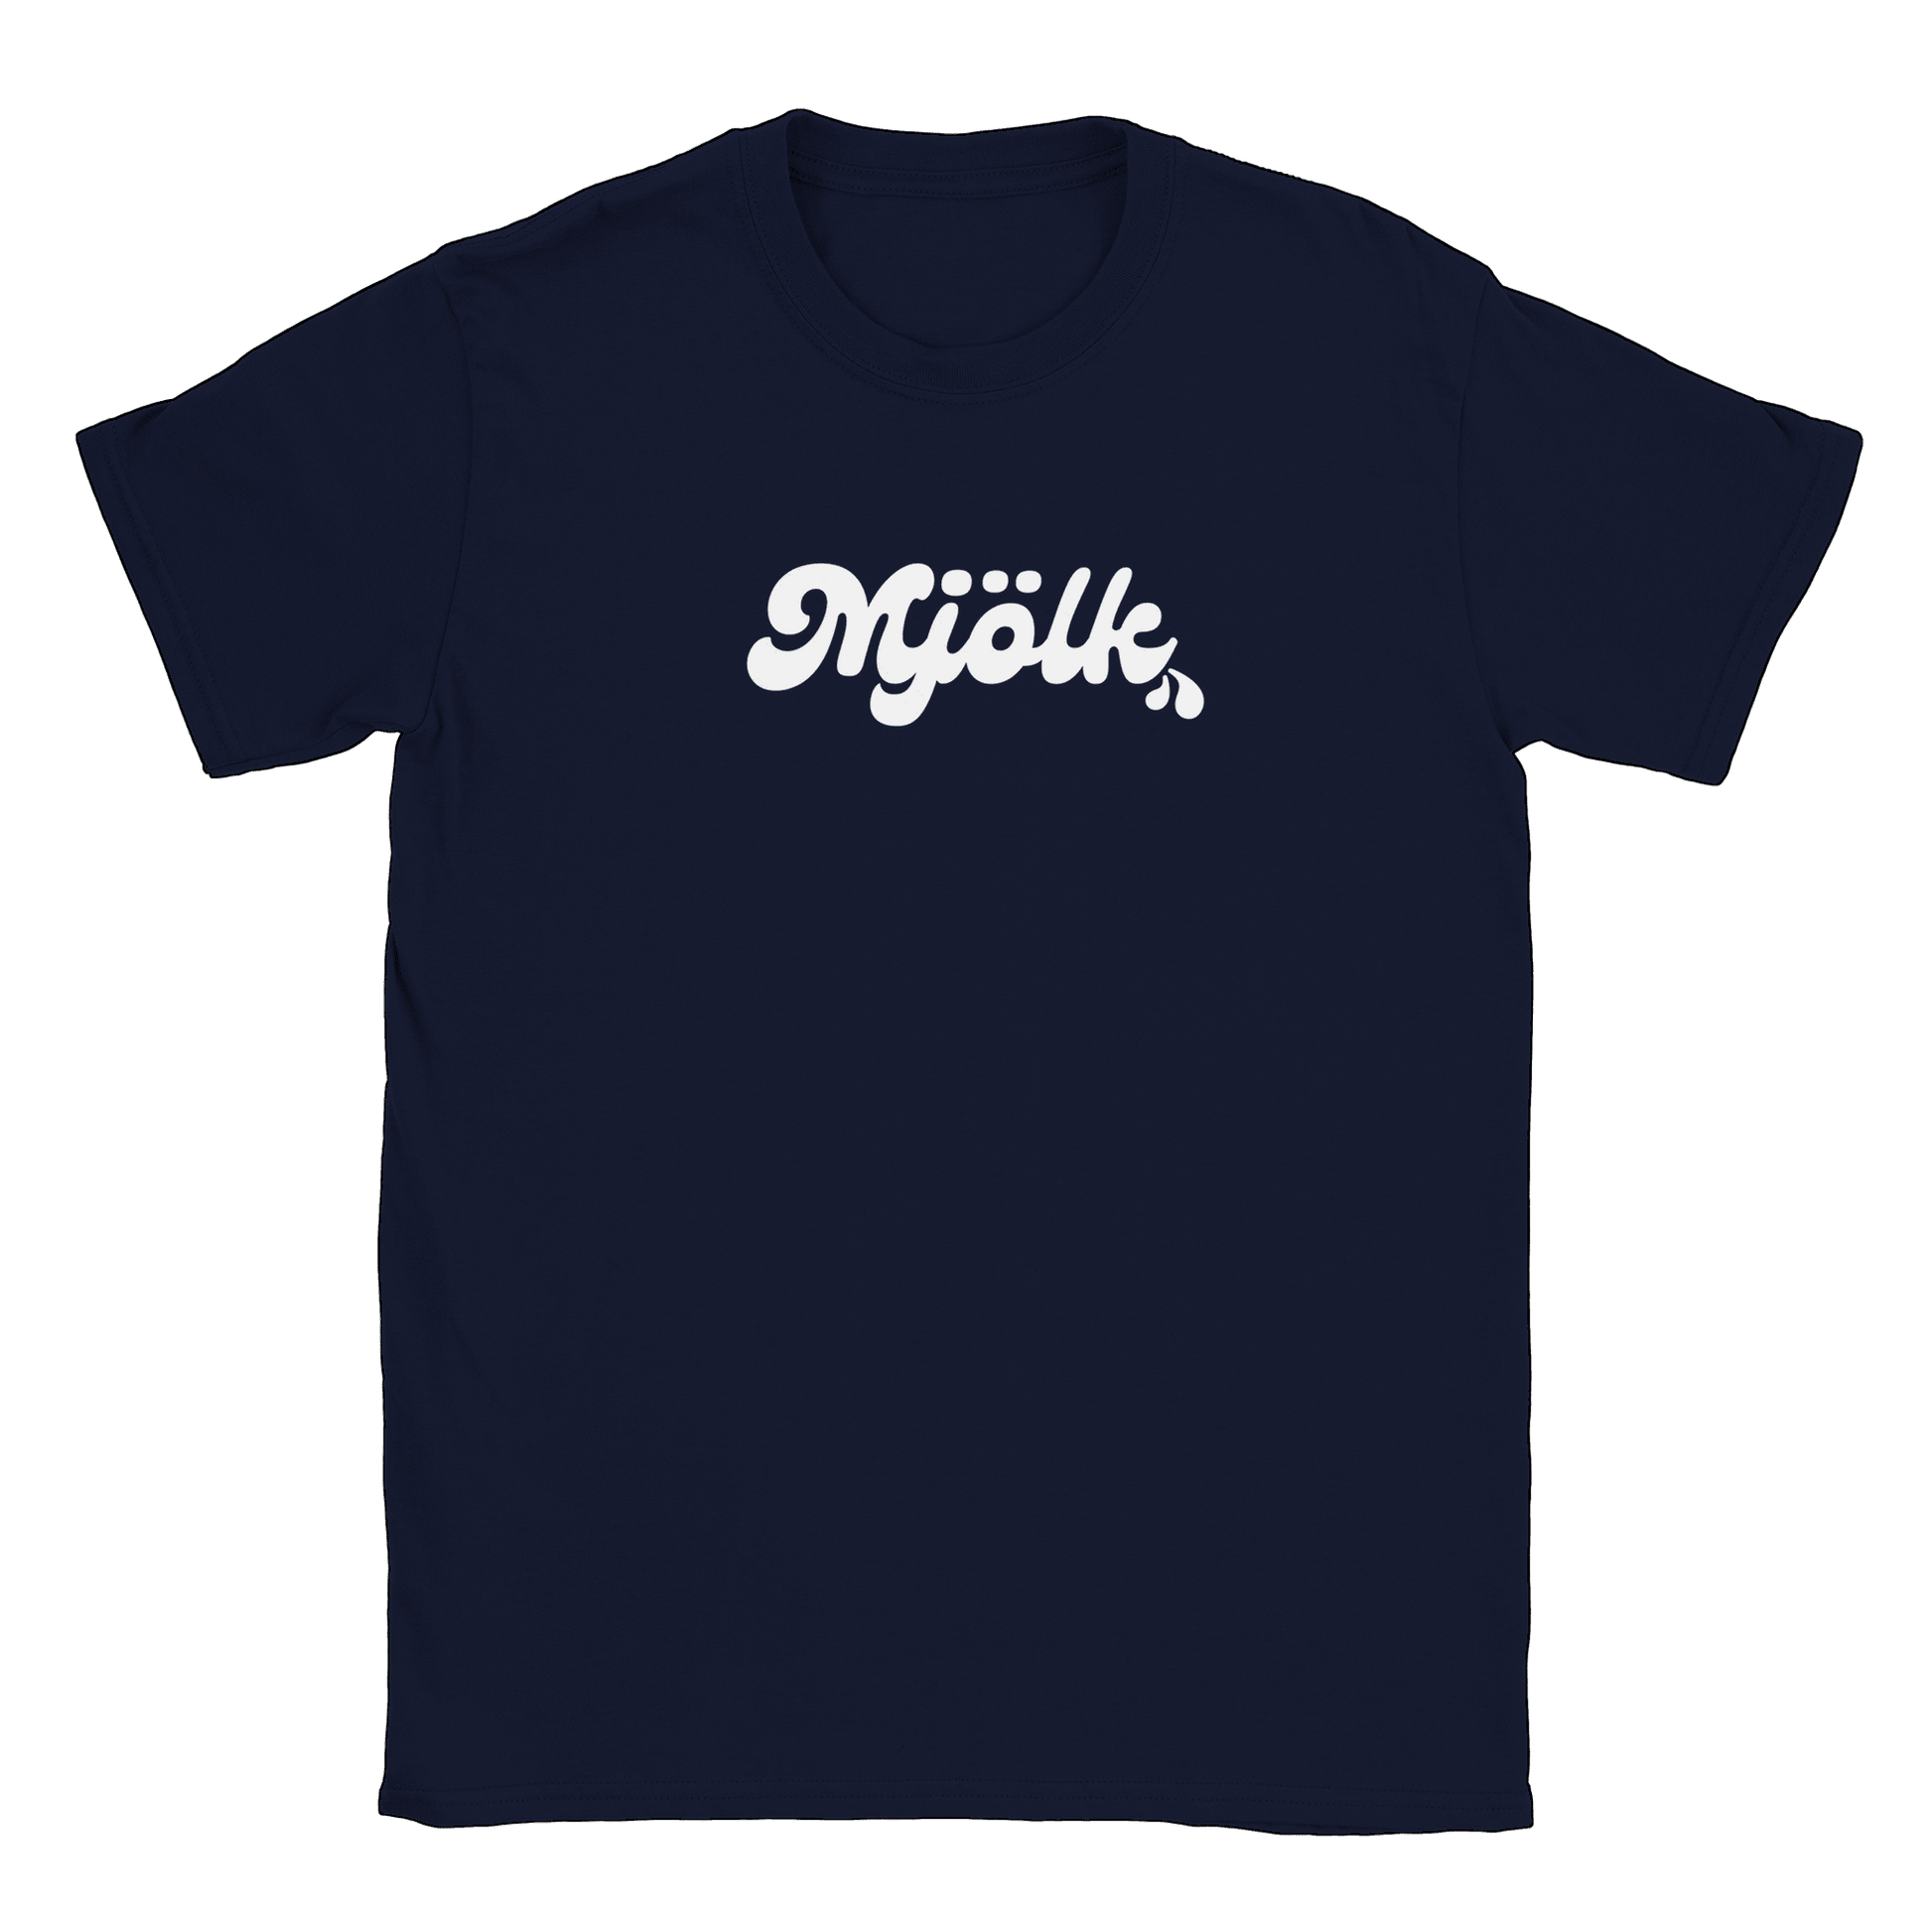 Mjölk - T-shirt Navy